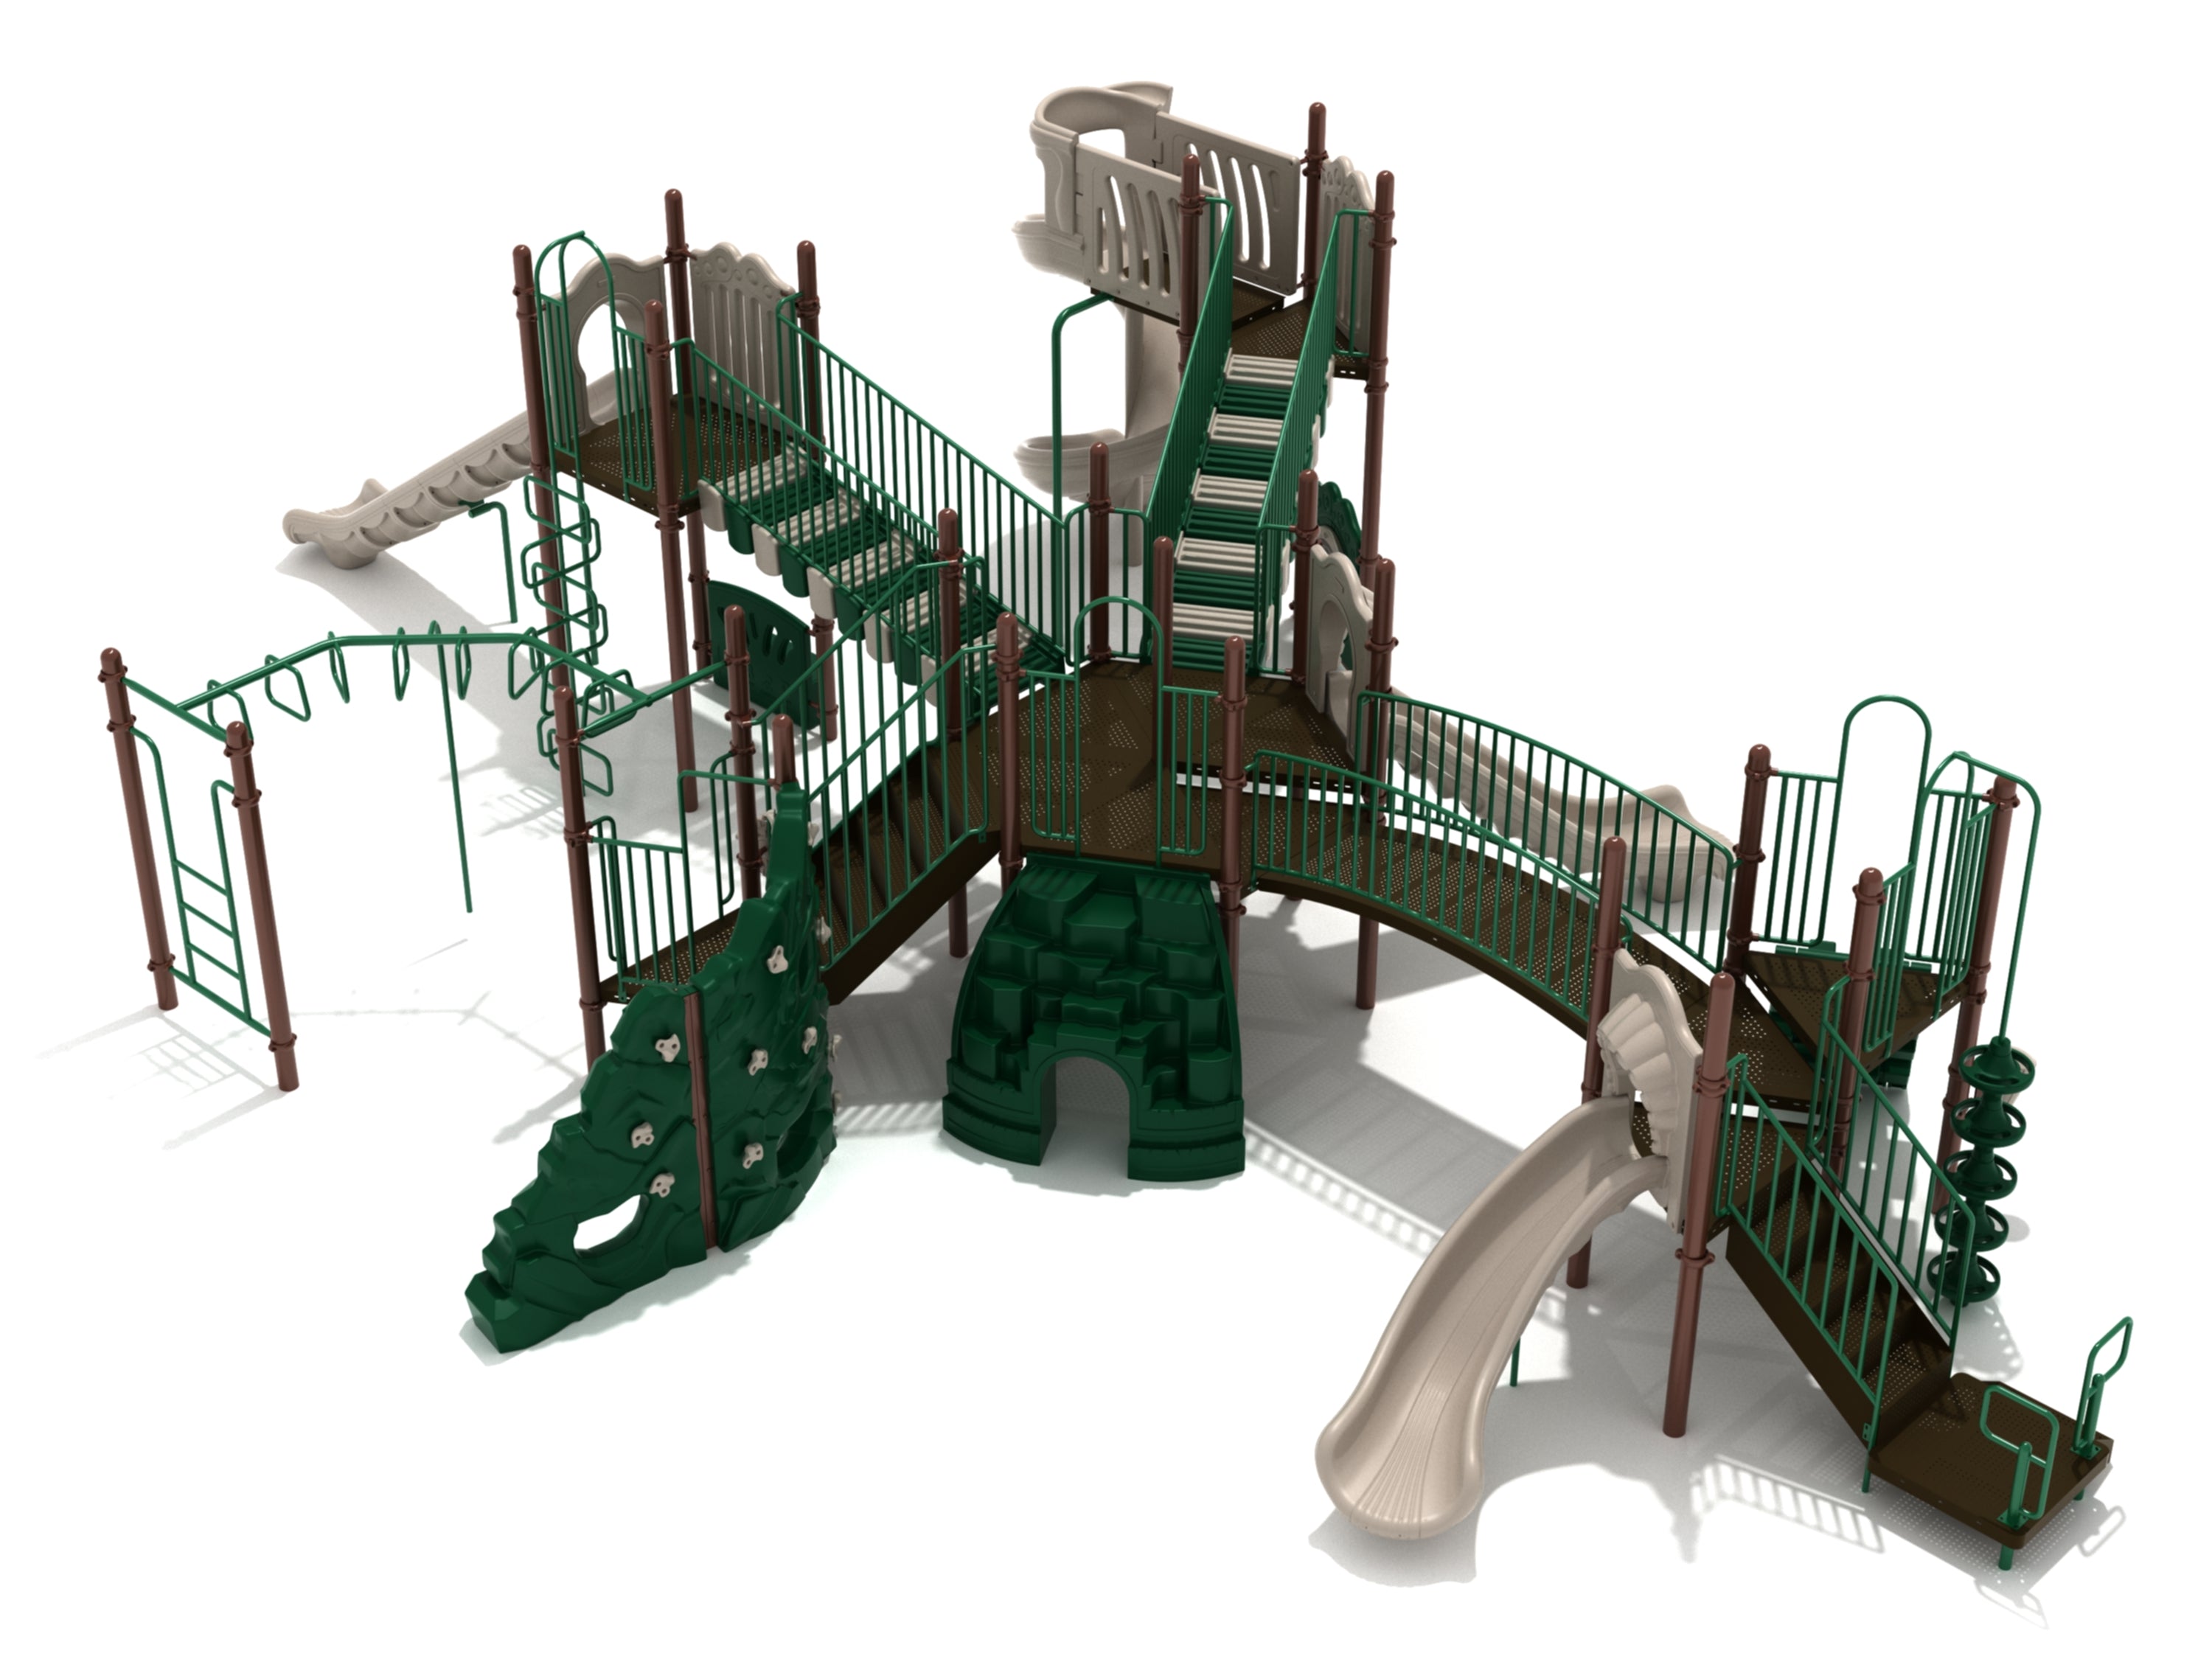 Drexel Pointe Playground